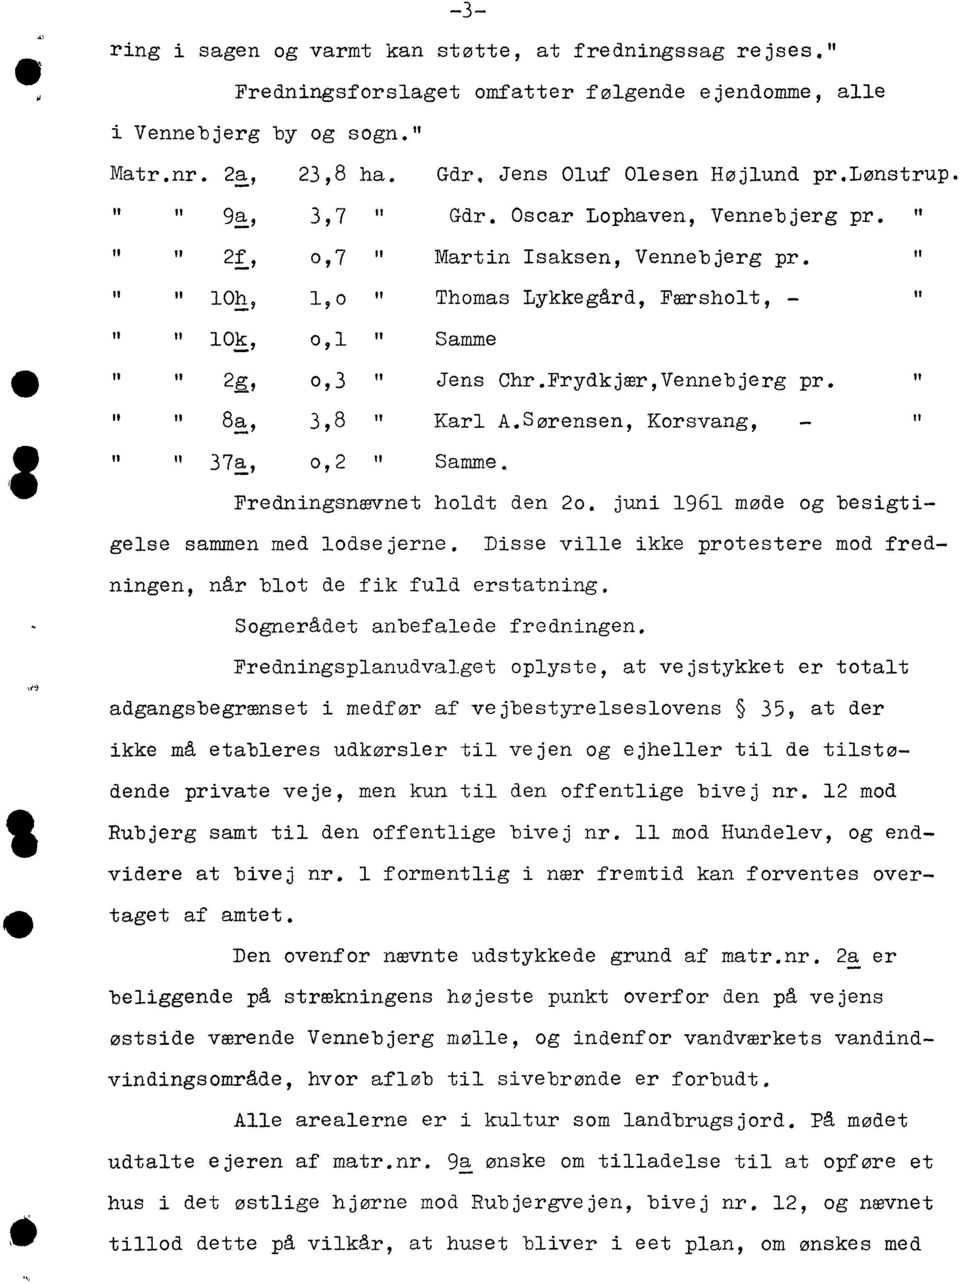 FrydkjærVennebjerg pr. " " " 8. :" 38 " Karl A.Sørensen Korsvang " " II 37. :" 02 " Samme. Fredningsnævnet holdt den 20. juni 1961 møde og besigtigelse sammen med lodsejerne.